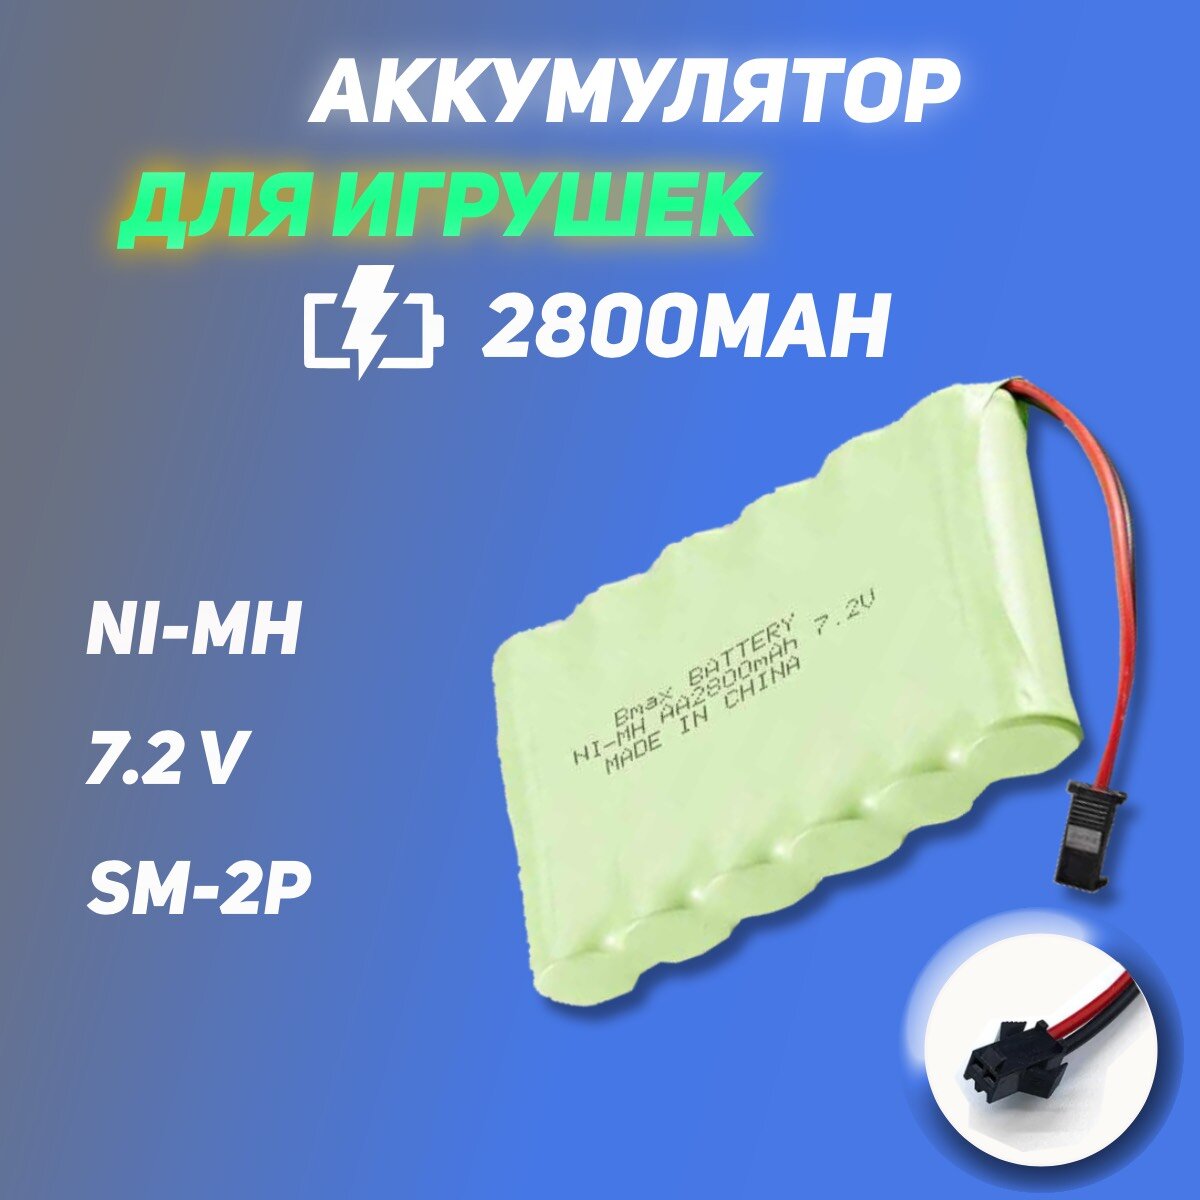 Аккумулятор для радиоуправляемой машины (игрушки) Ni-Mh 7.2V 2800mAh разъем SM-2P